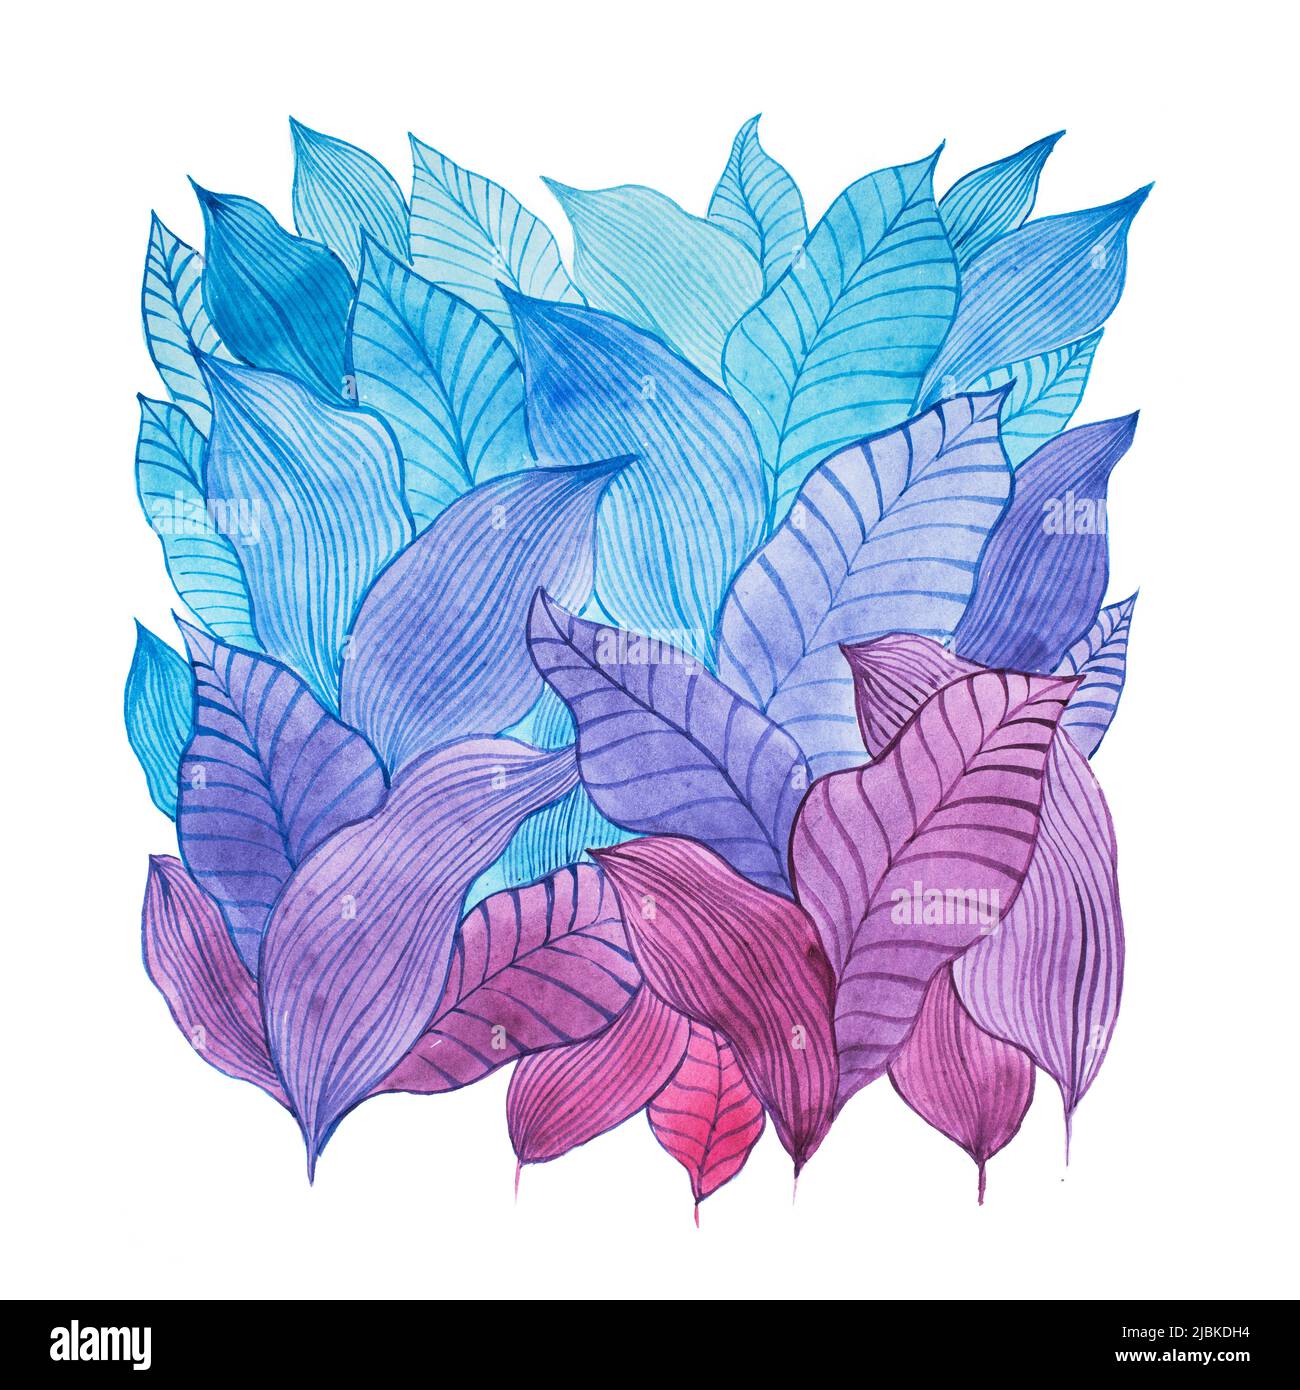 Aquarelle Illustration überlappender Blätter mit cooler Farbkombination gezeichnet. Stockfoto